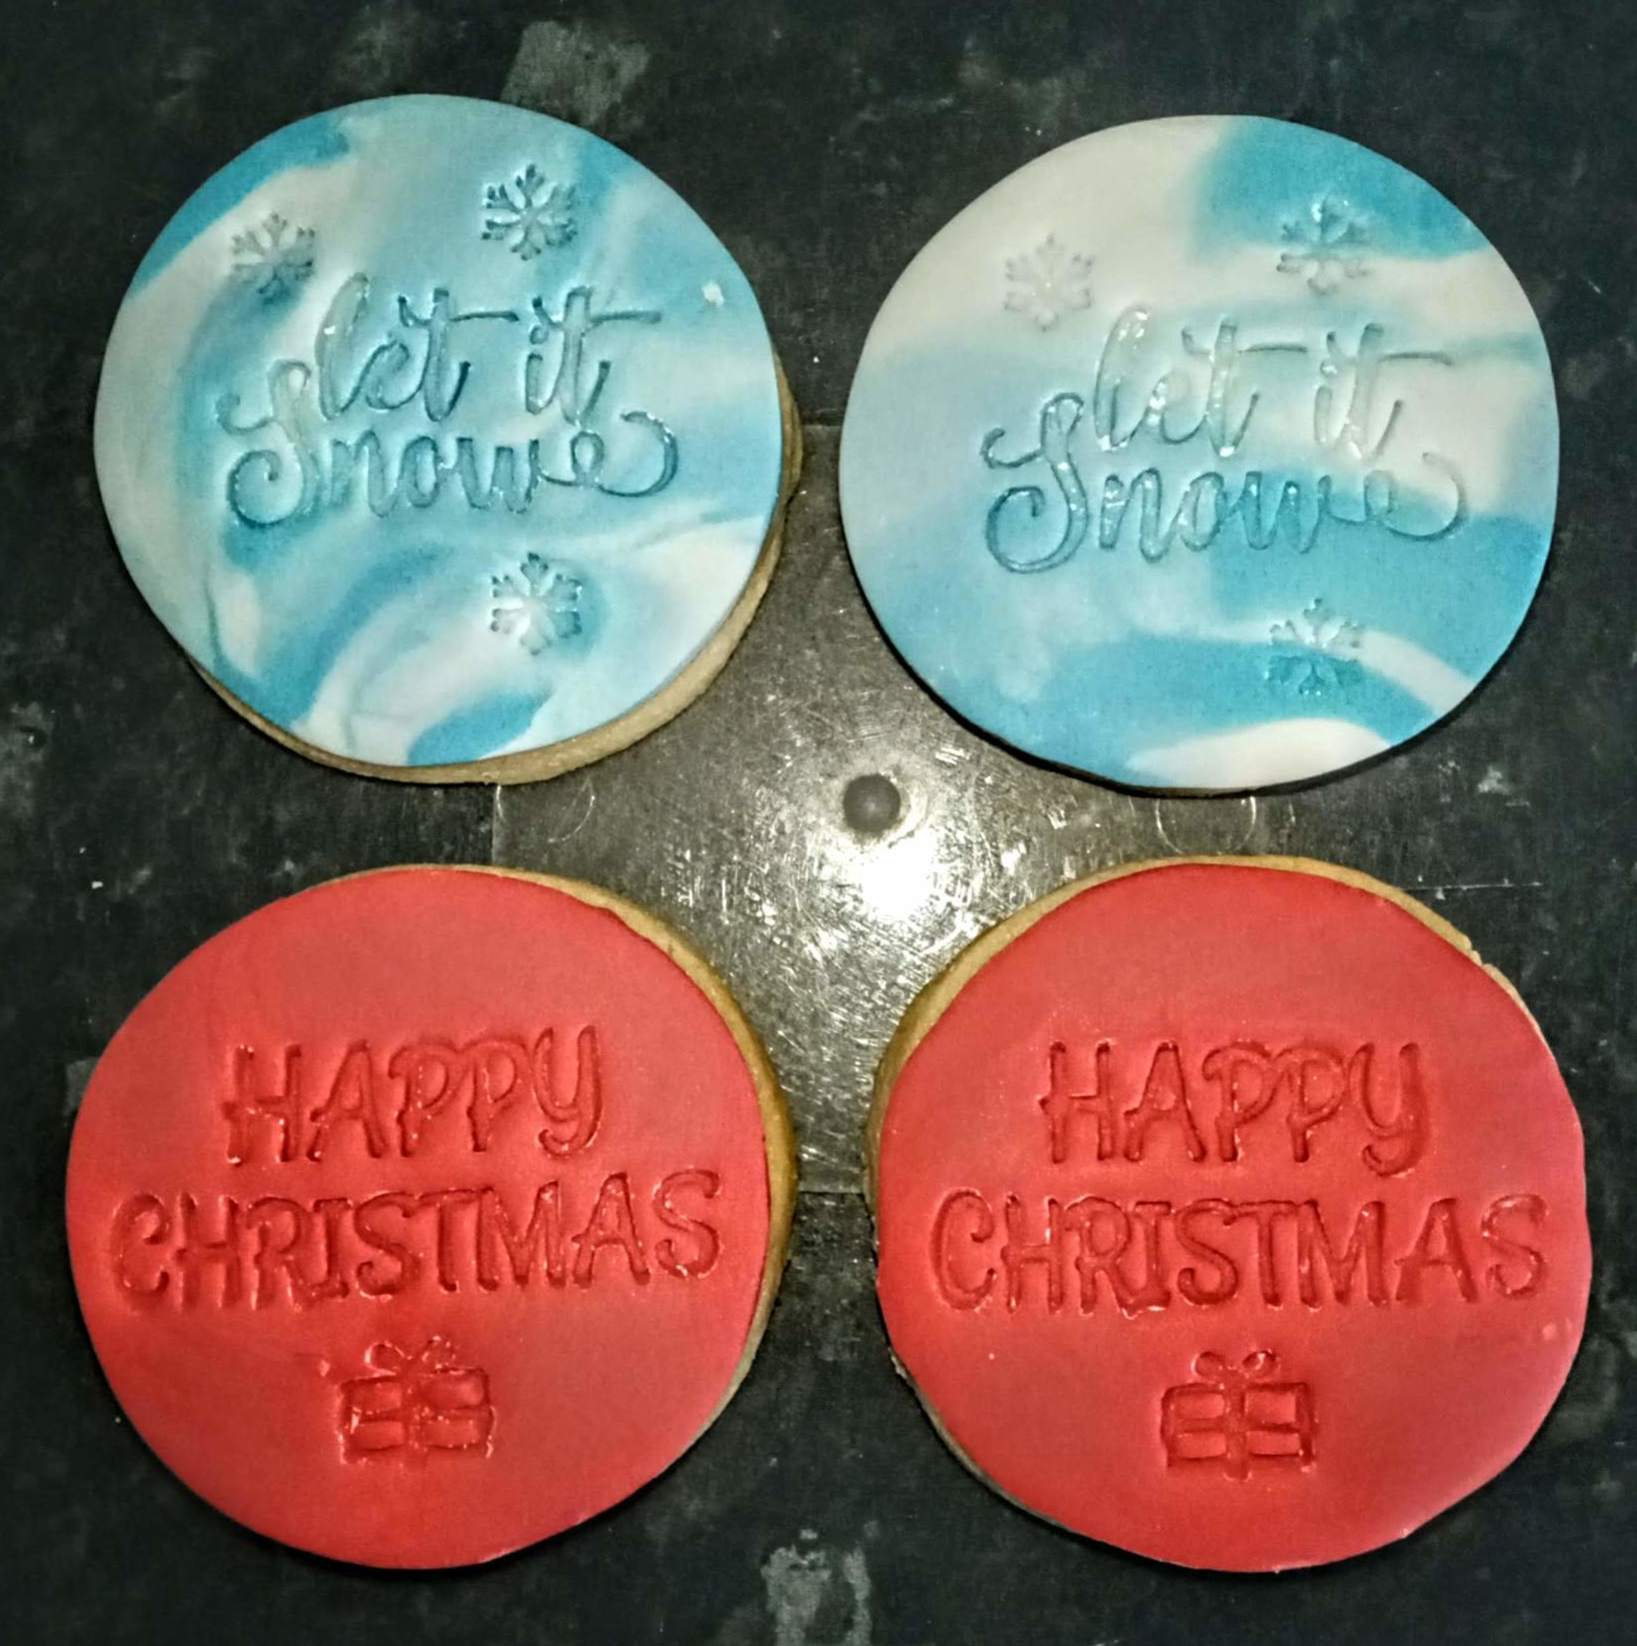 Christmas greetings cookies set